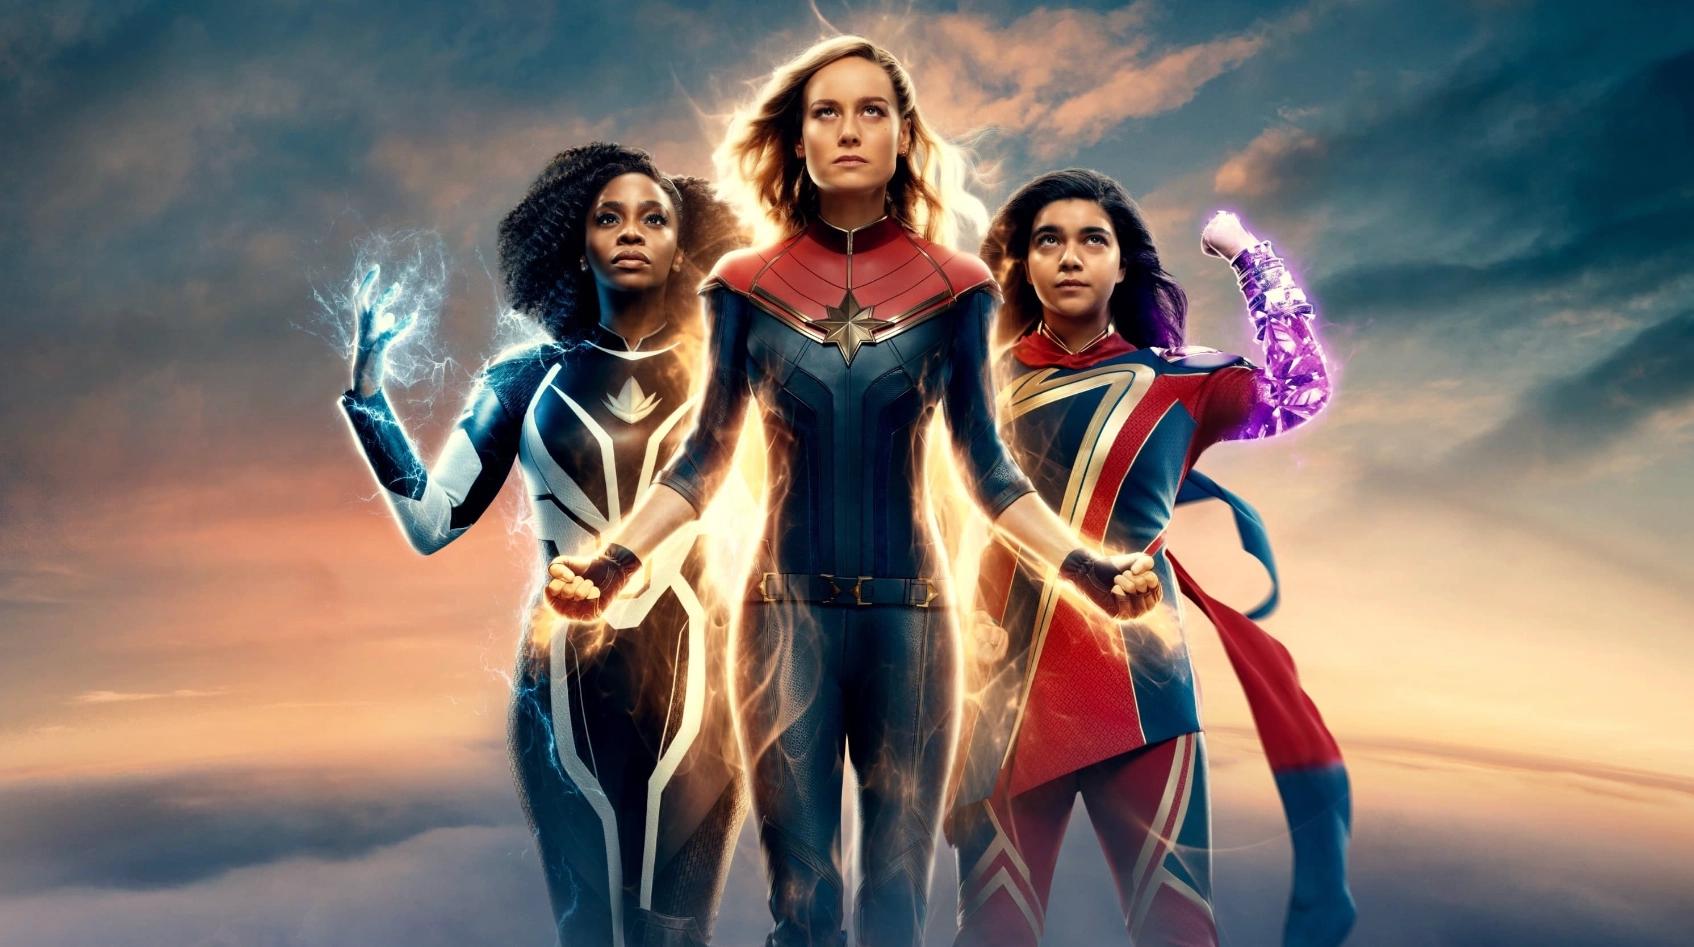 รีวิวหนัง The Marvels: หนังซุปเปอร์ฮีโร่มาใหม่ รวมทีมสาวแกร่ง MCU ประจำปี 2023